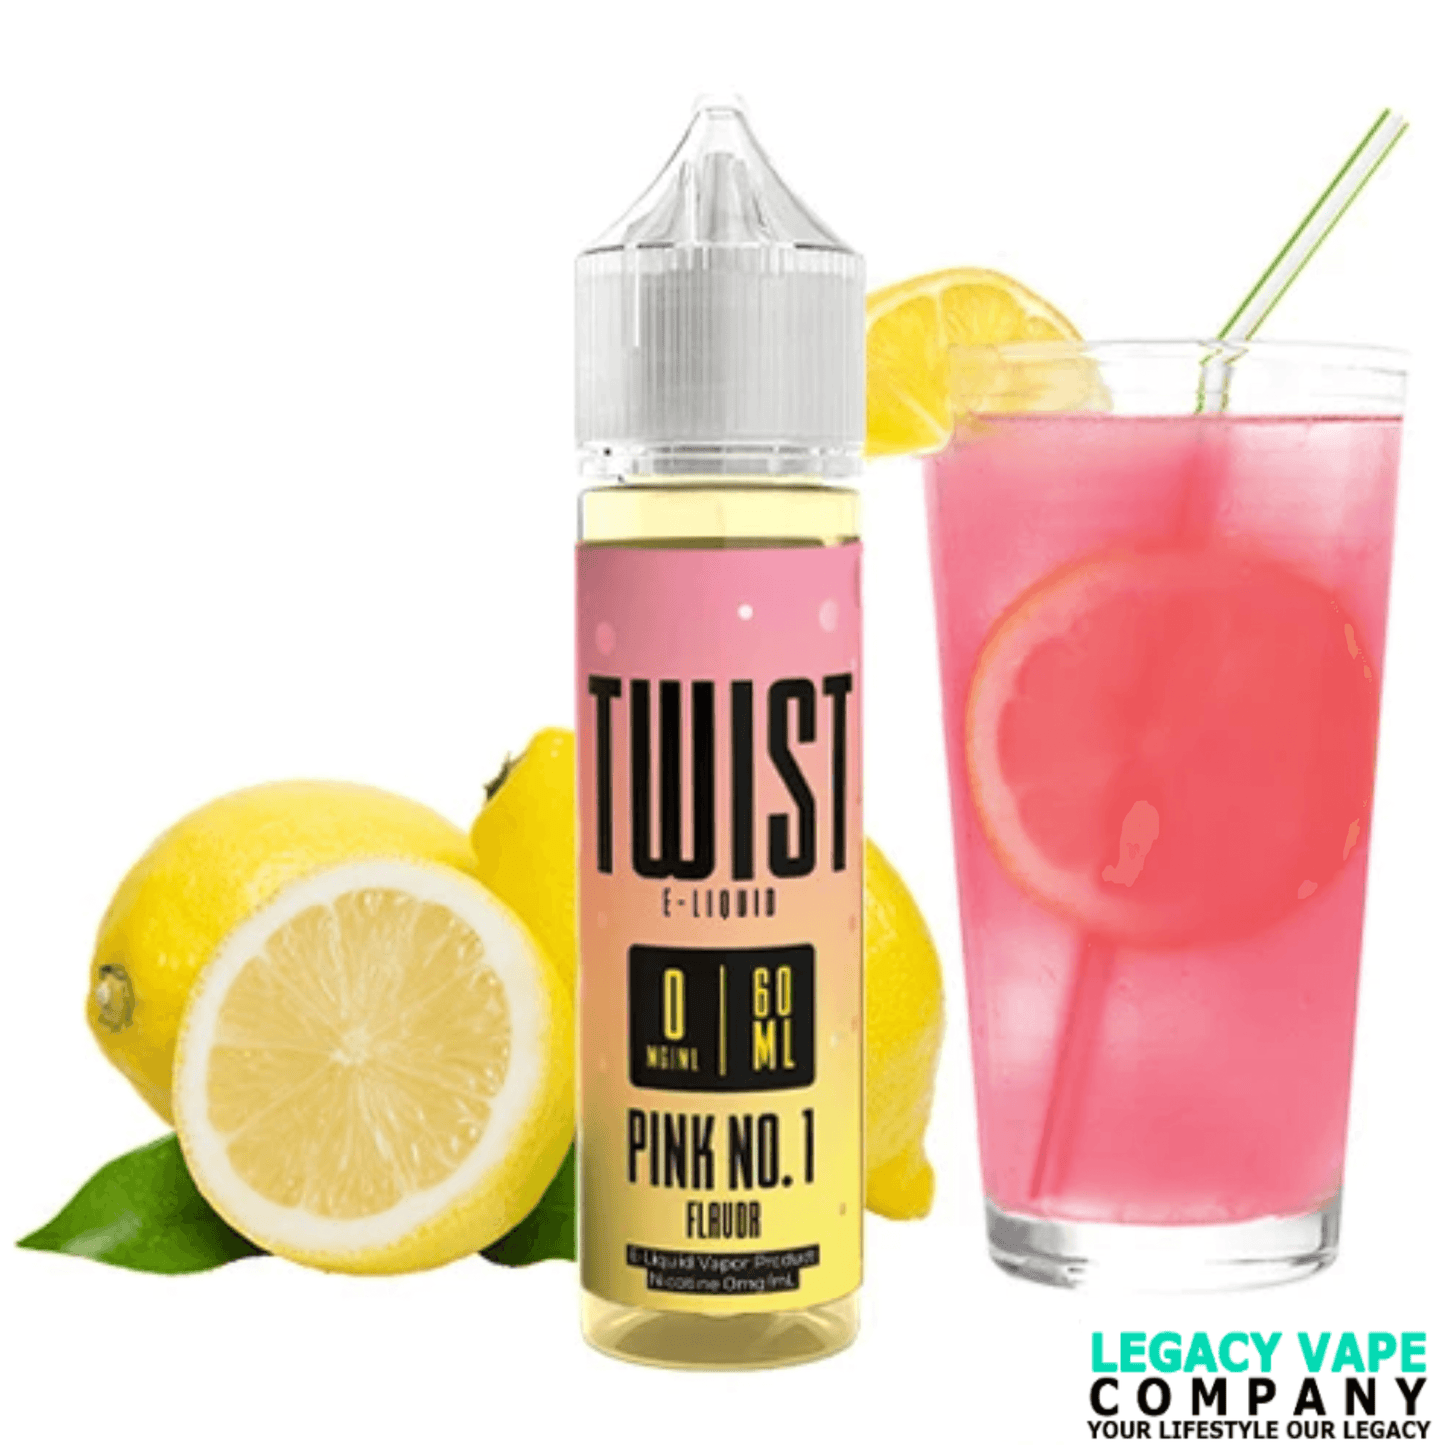 Twist E-liquid 60ml pink